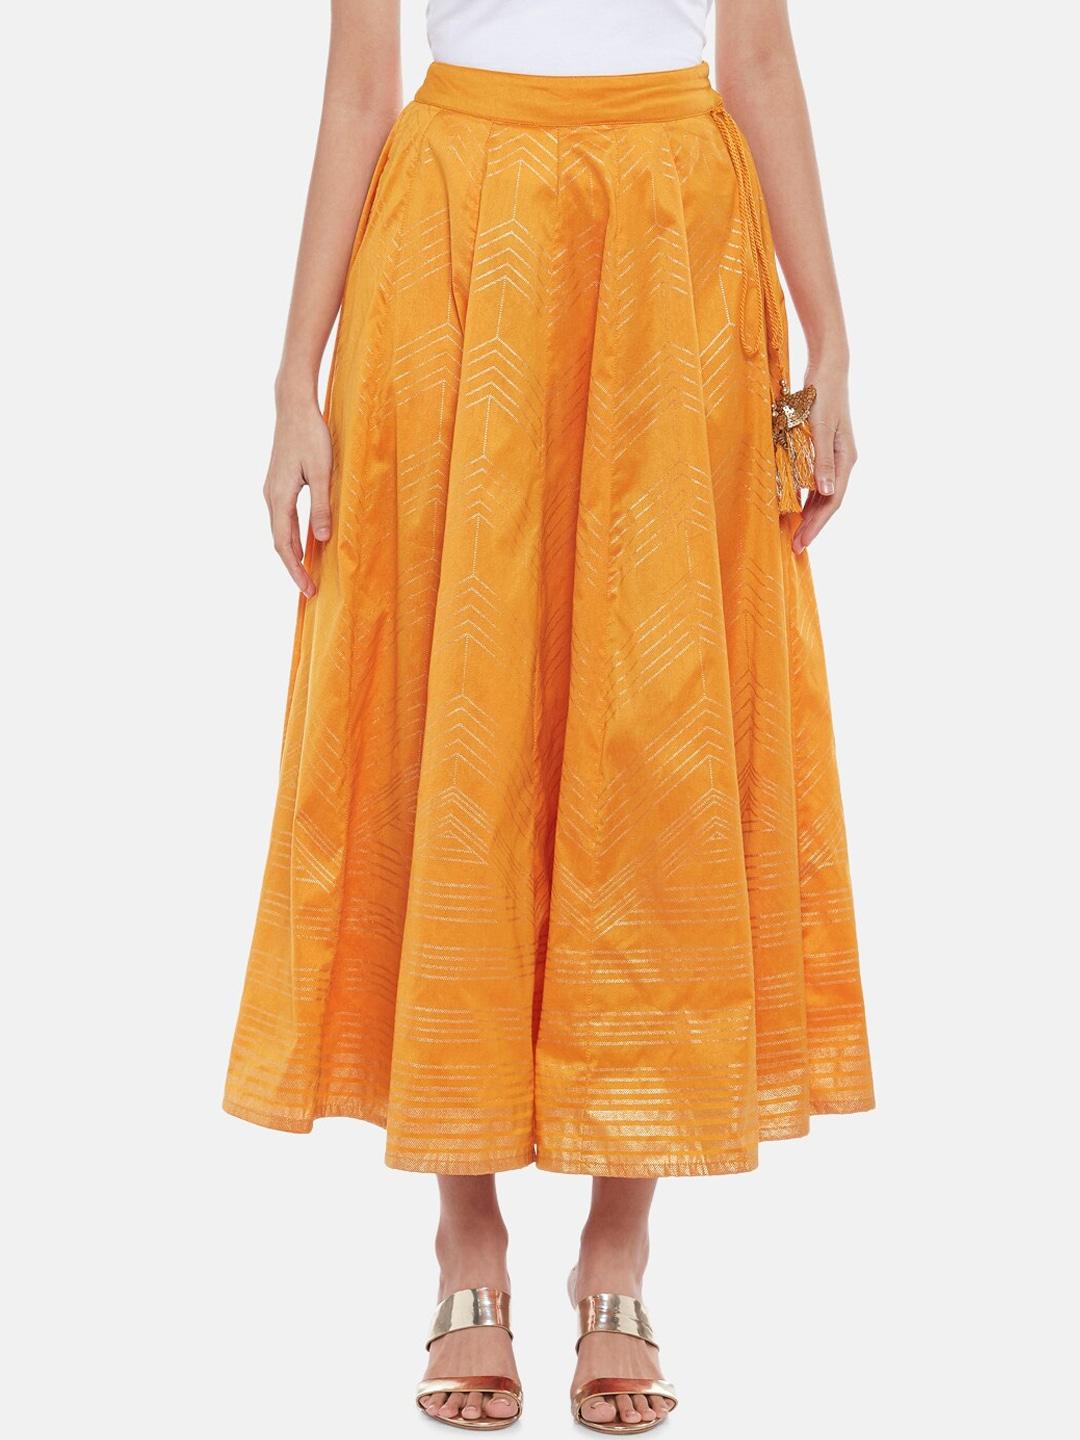 akkriti by pantaloons women mustard yellow printed flared midi skirts